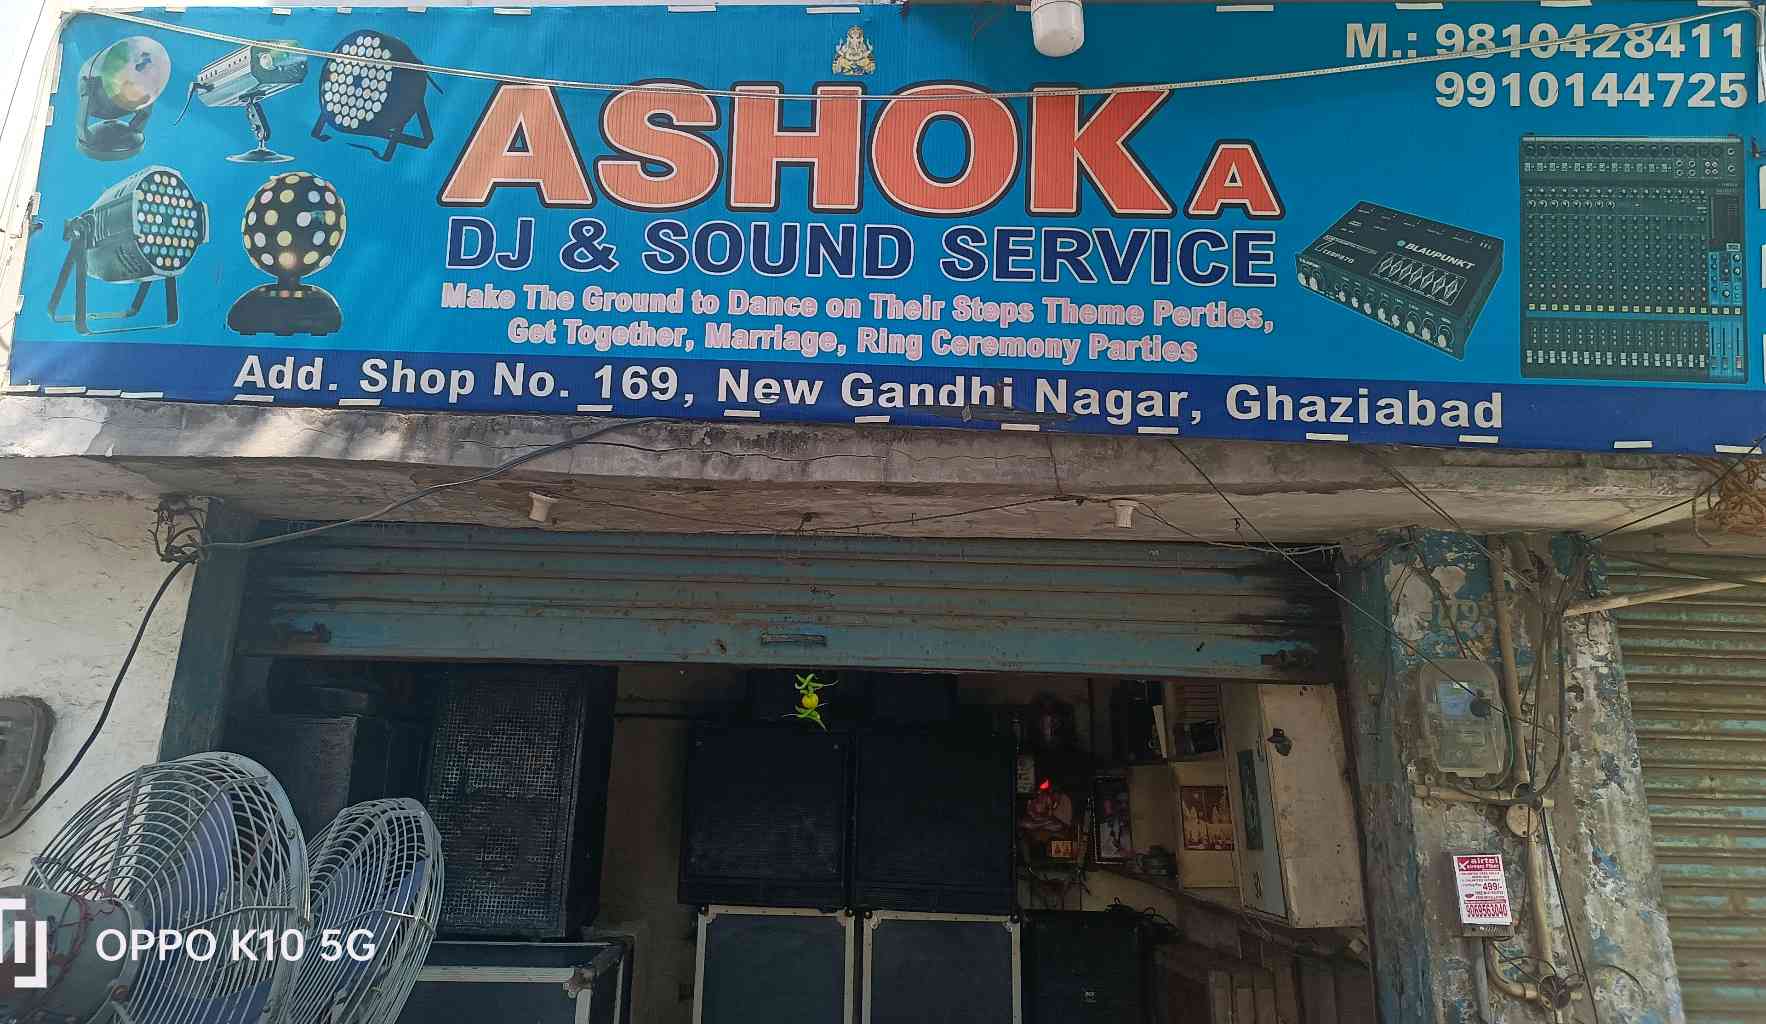 Ashoka Dj & Sound Service